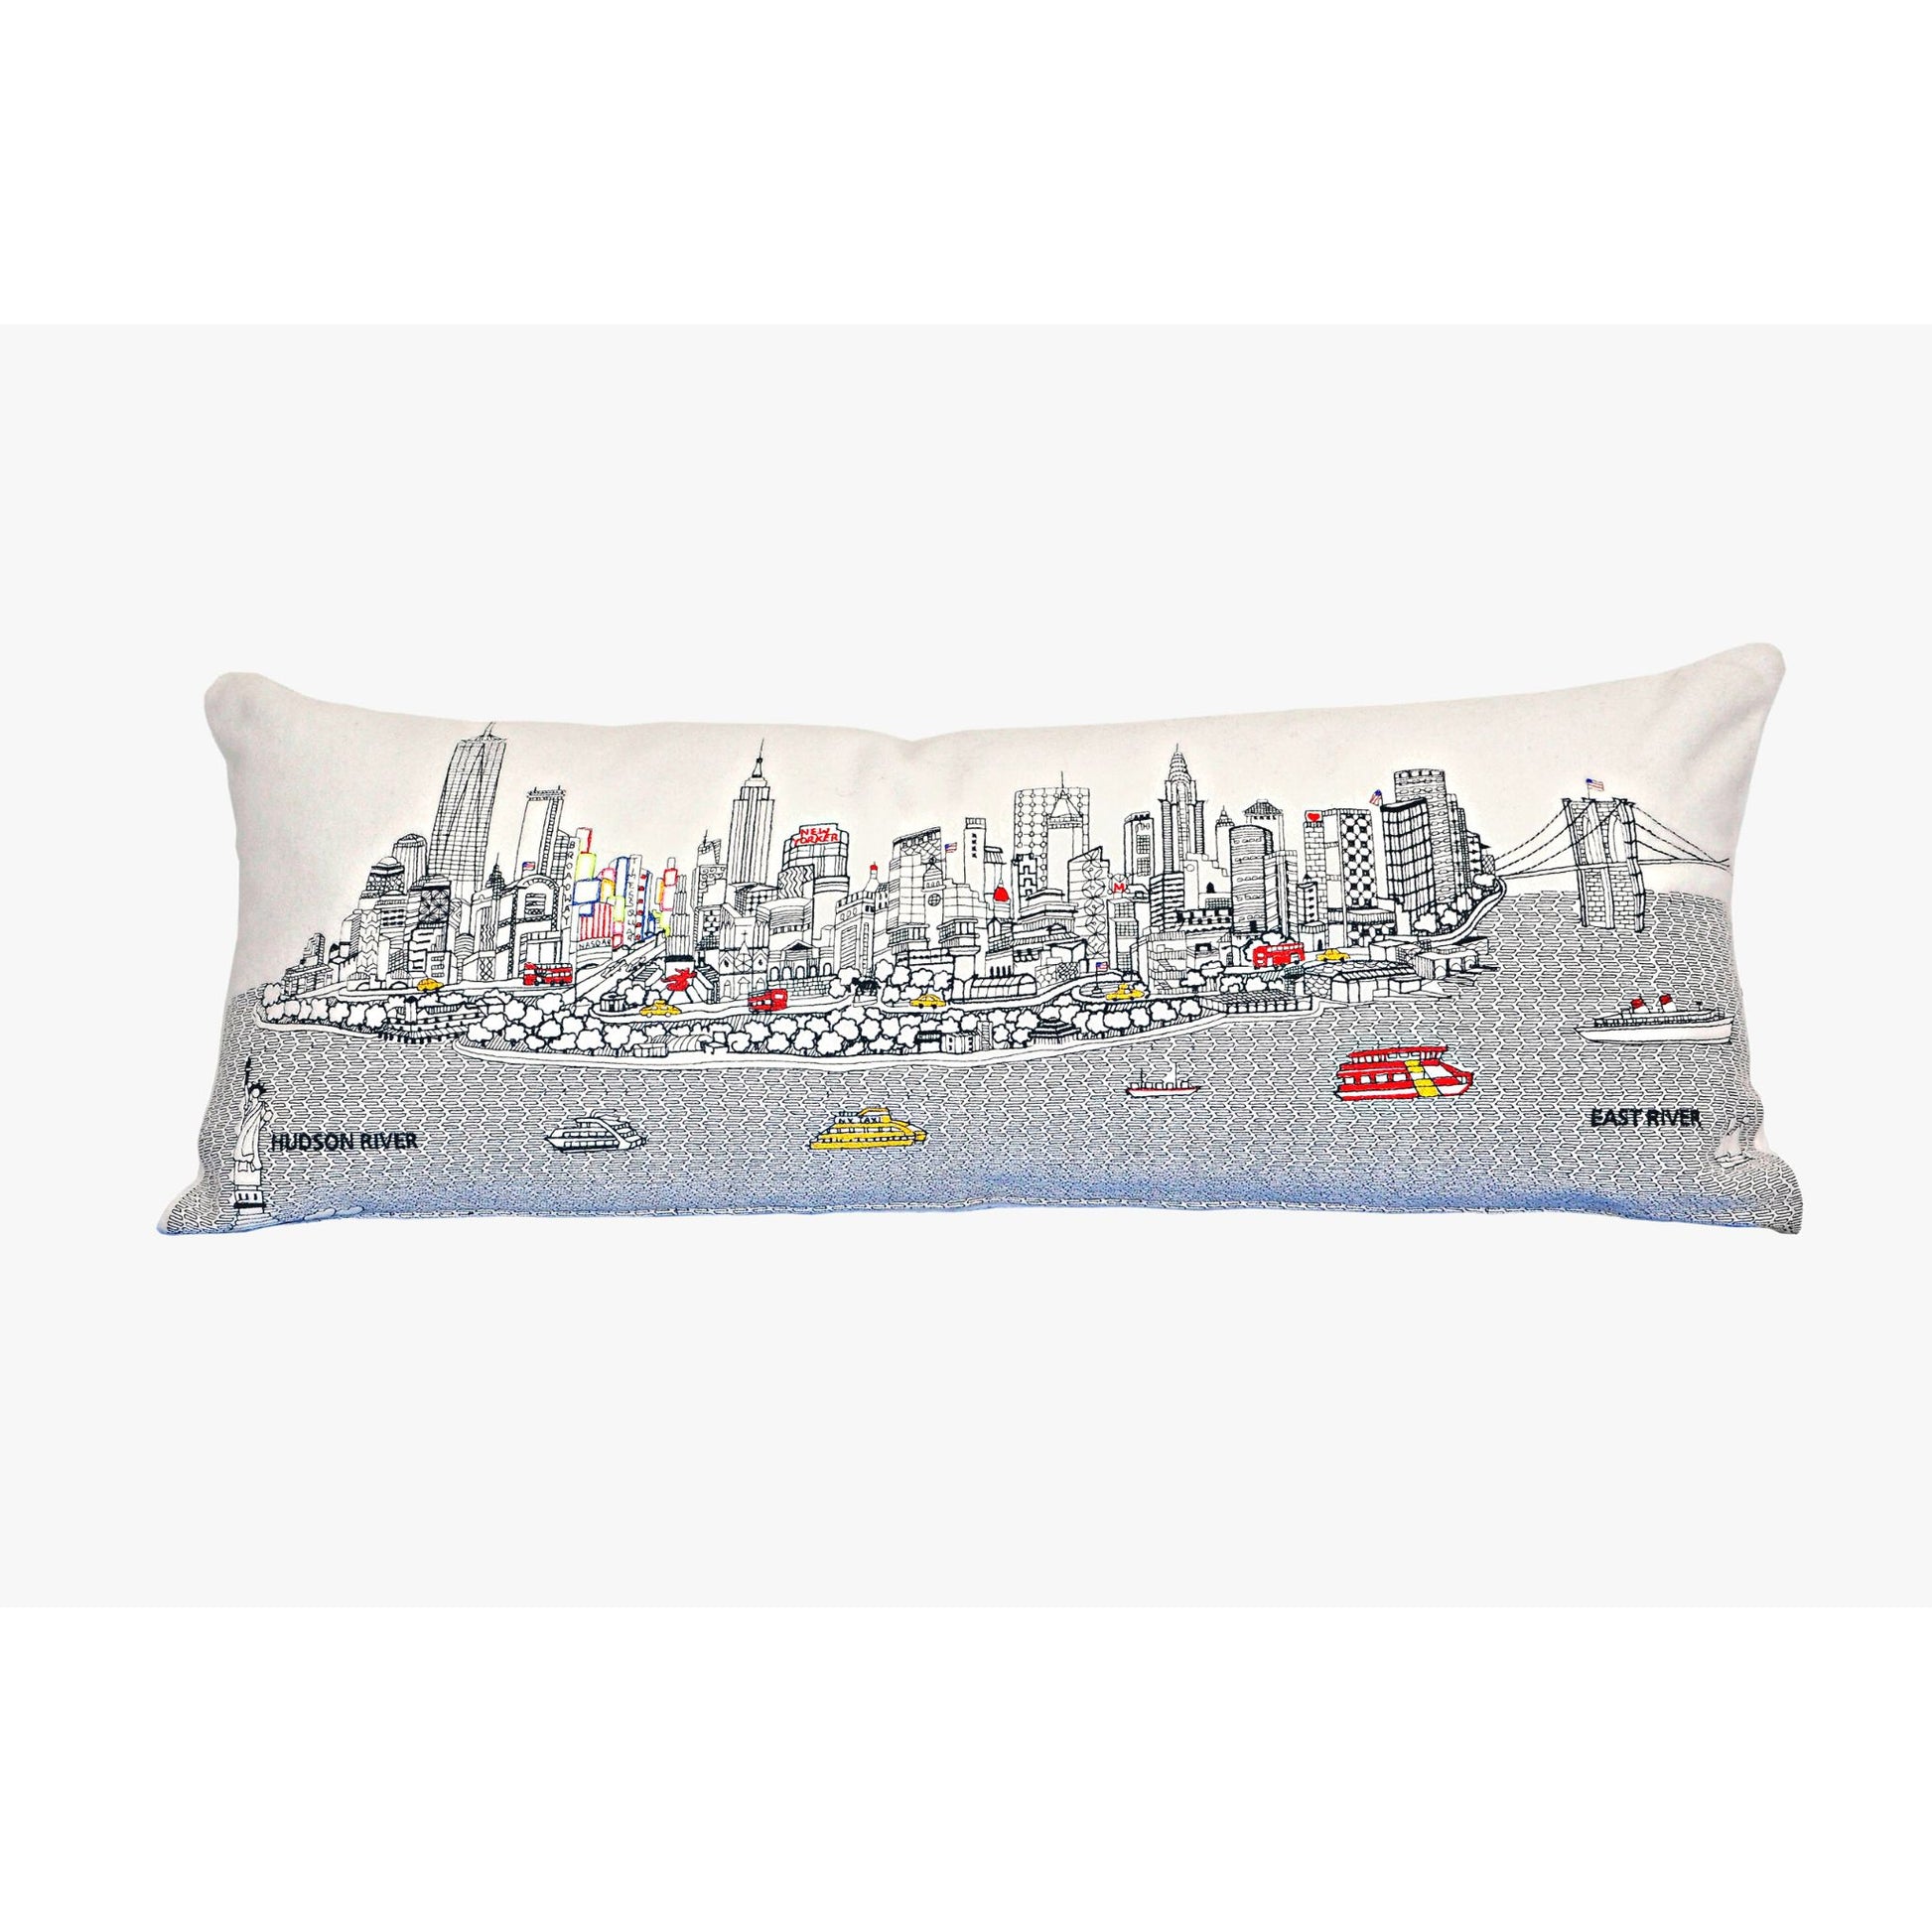 New York City Queen Size Pillow